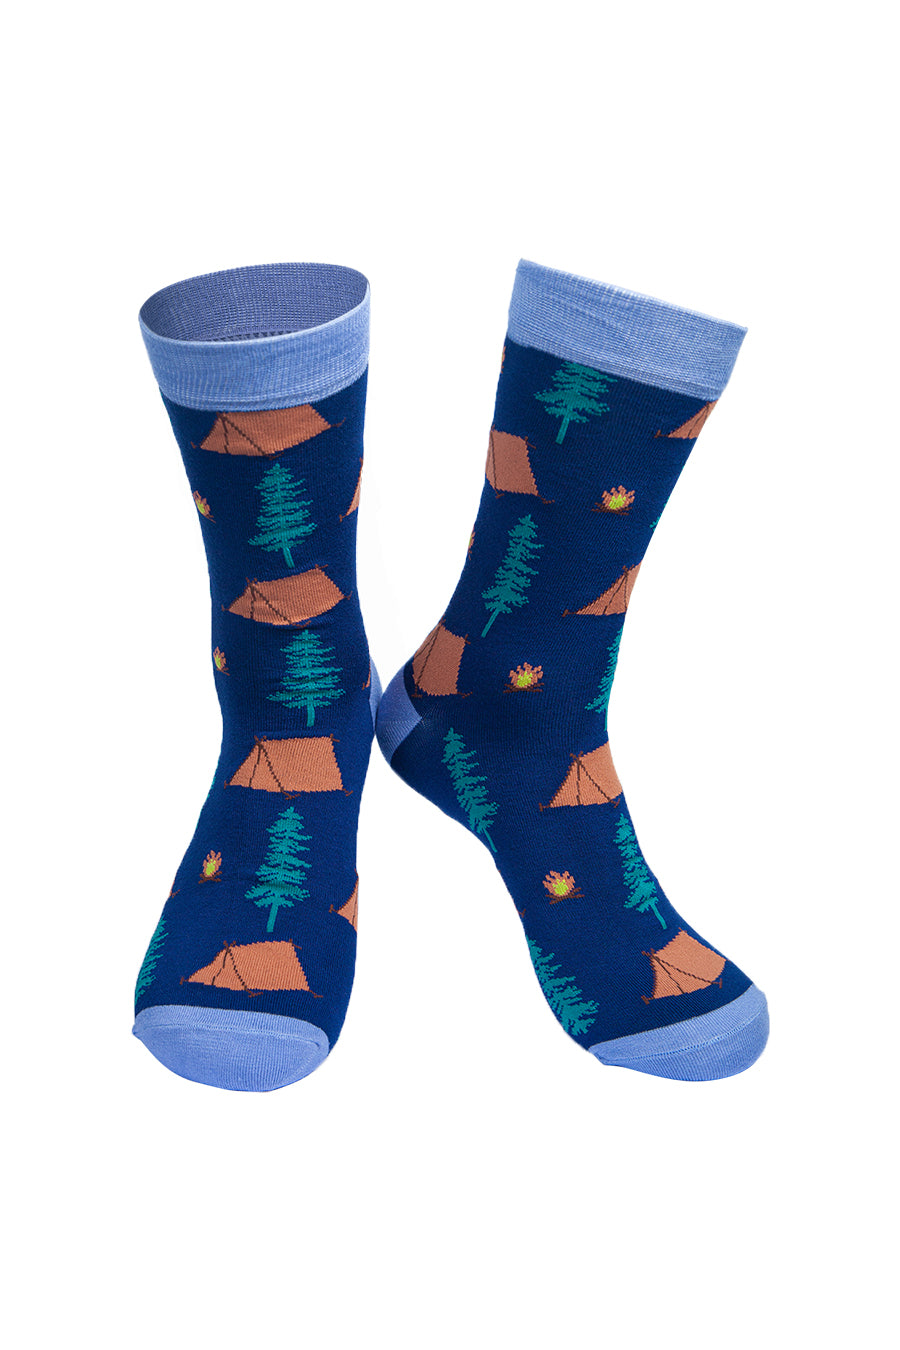 Mens Bamboo Camping Socks Novelty Hiking Socks Blue